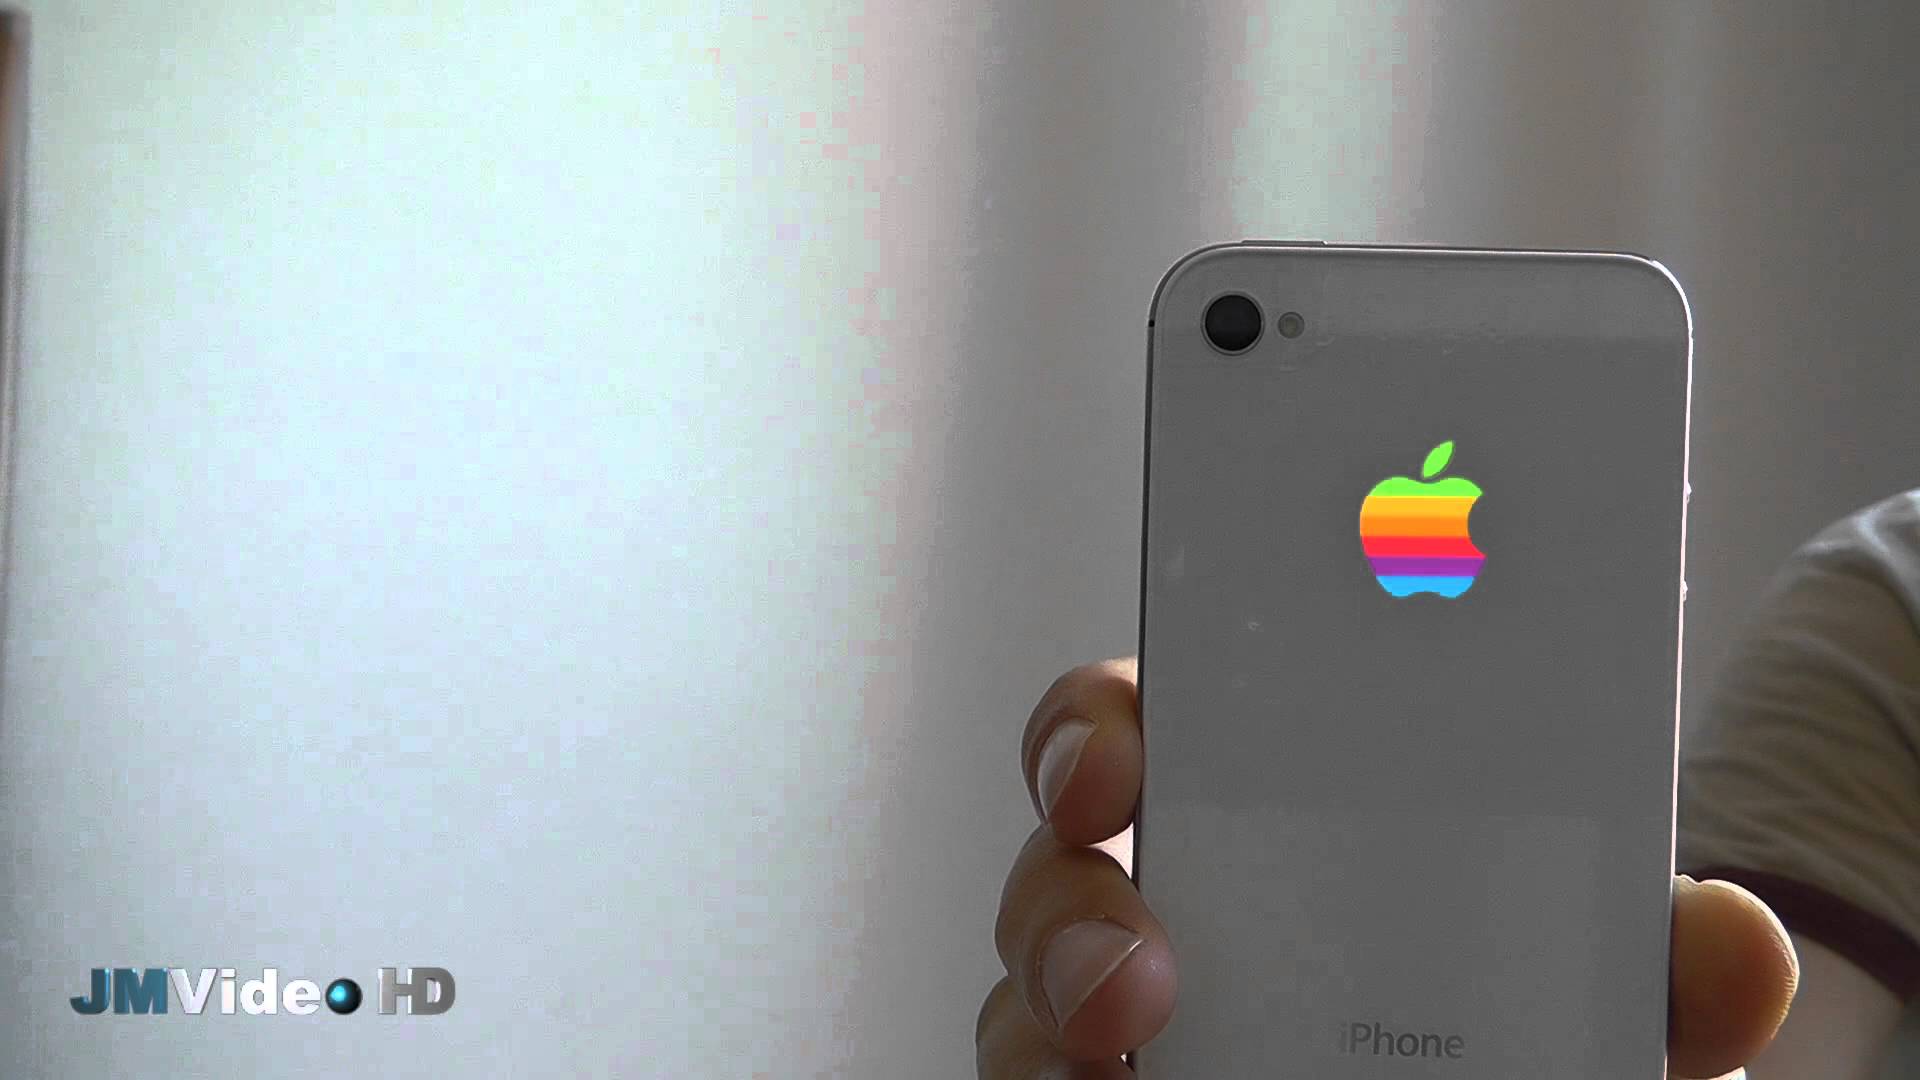 Illuminated iPhone Apple logo - YouTube